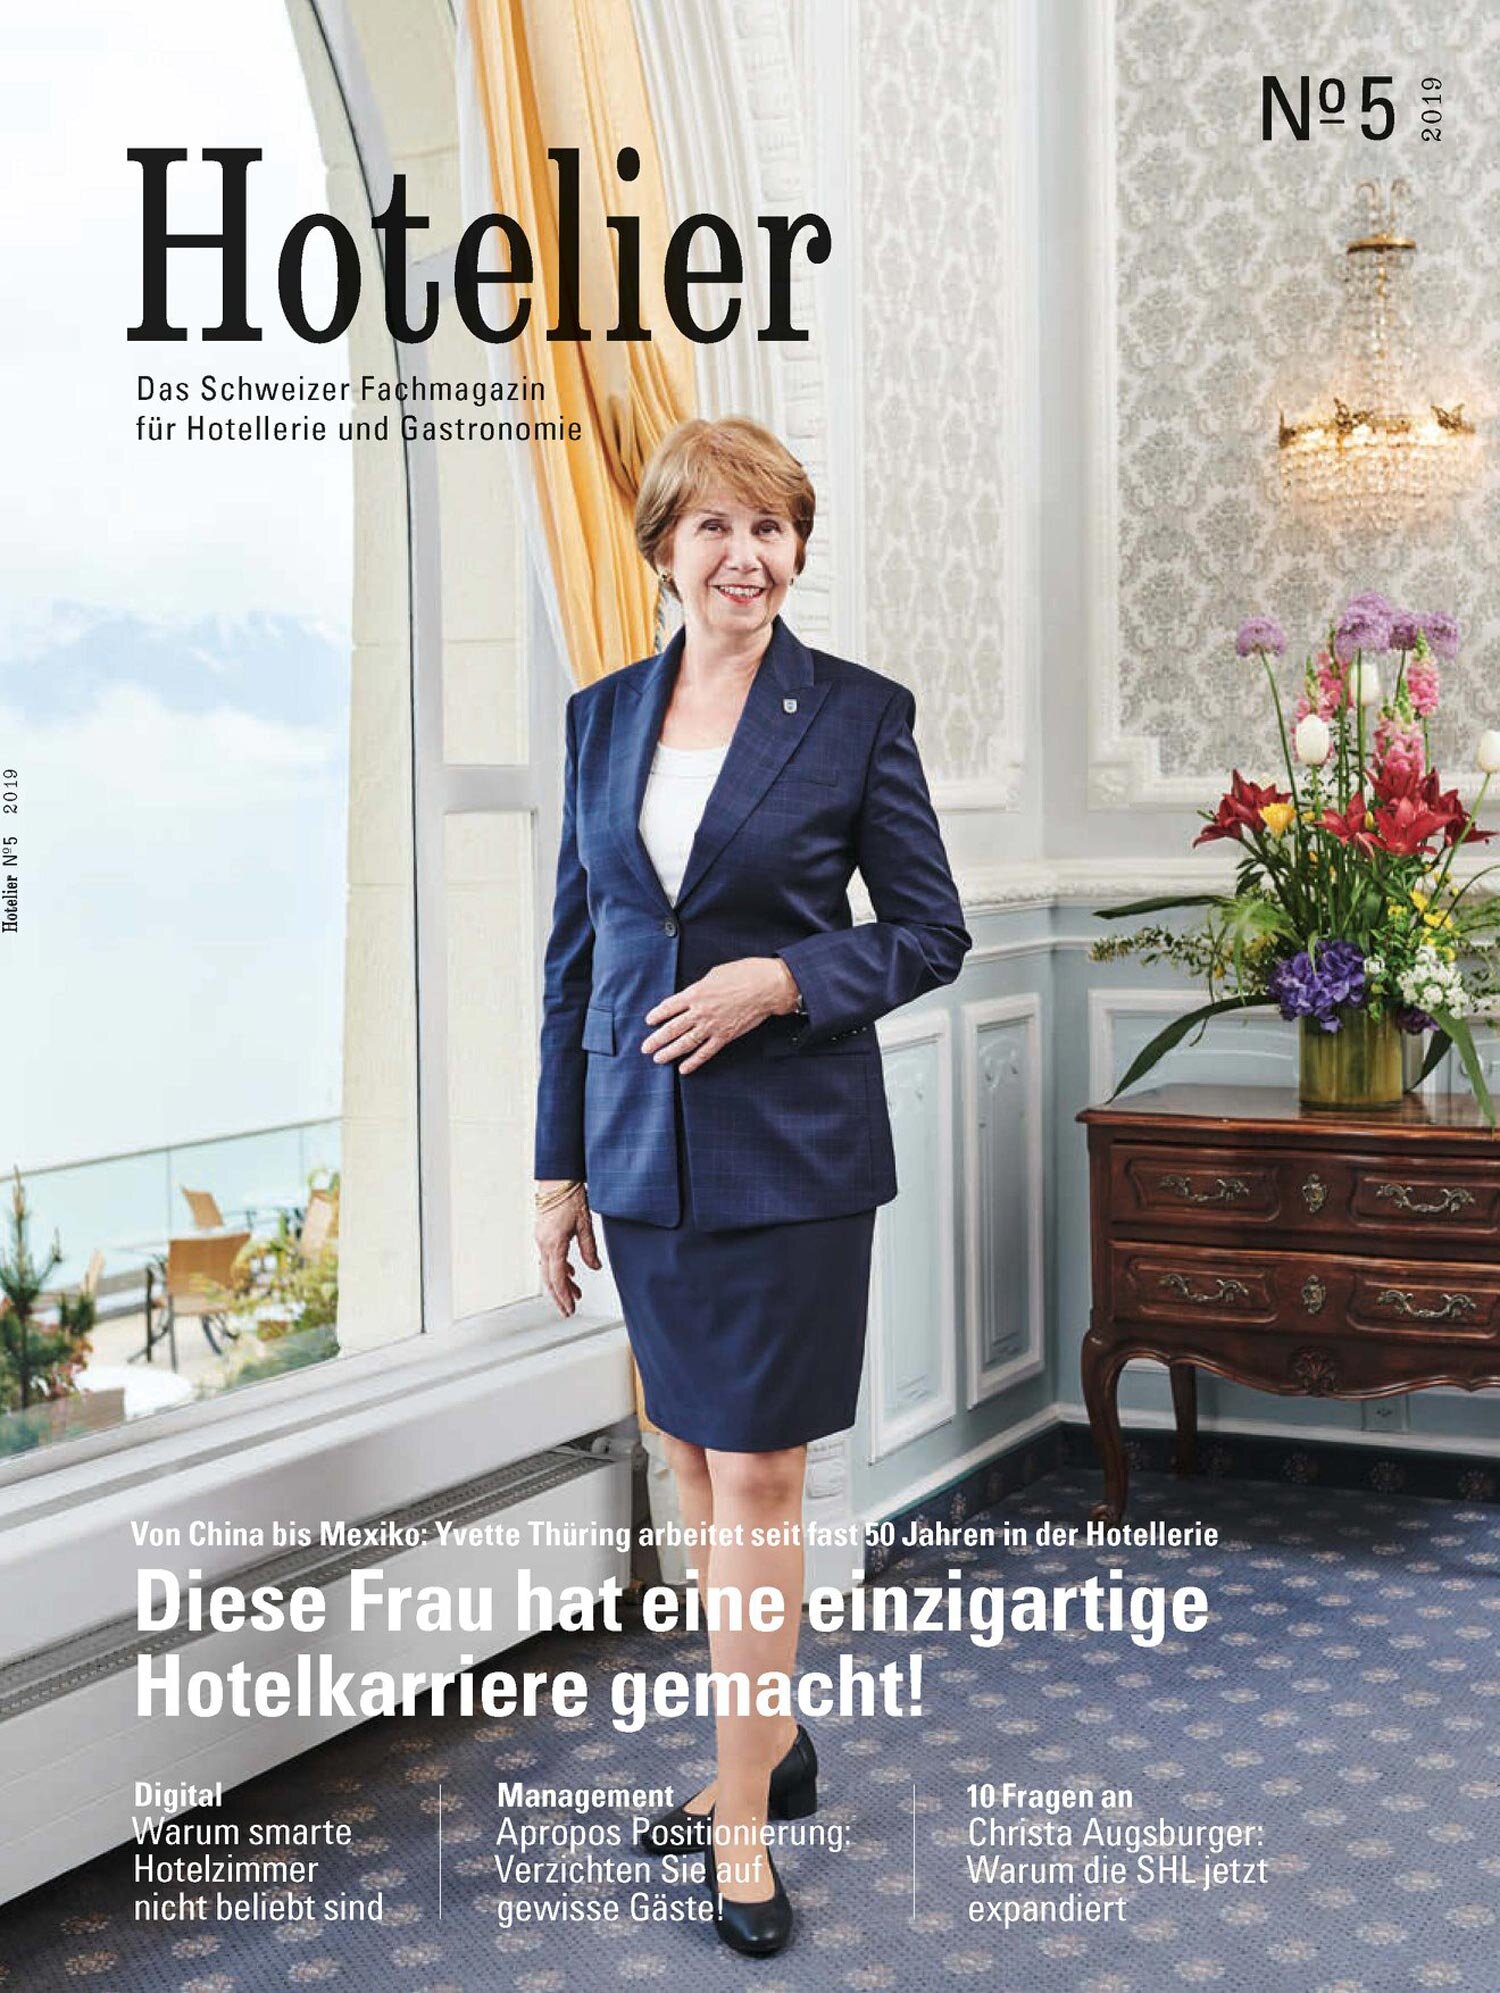 Hotelier-05-2019-00-web.jpg